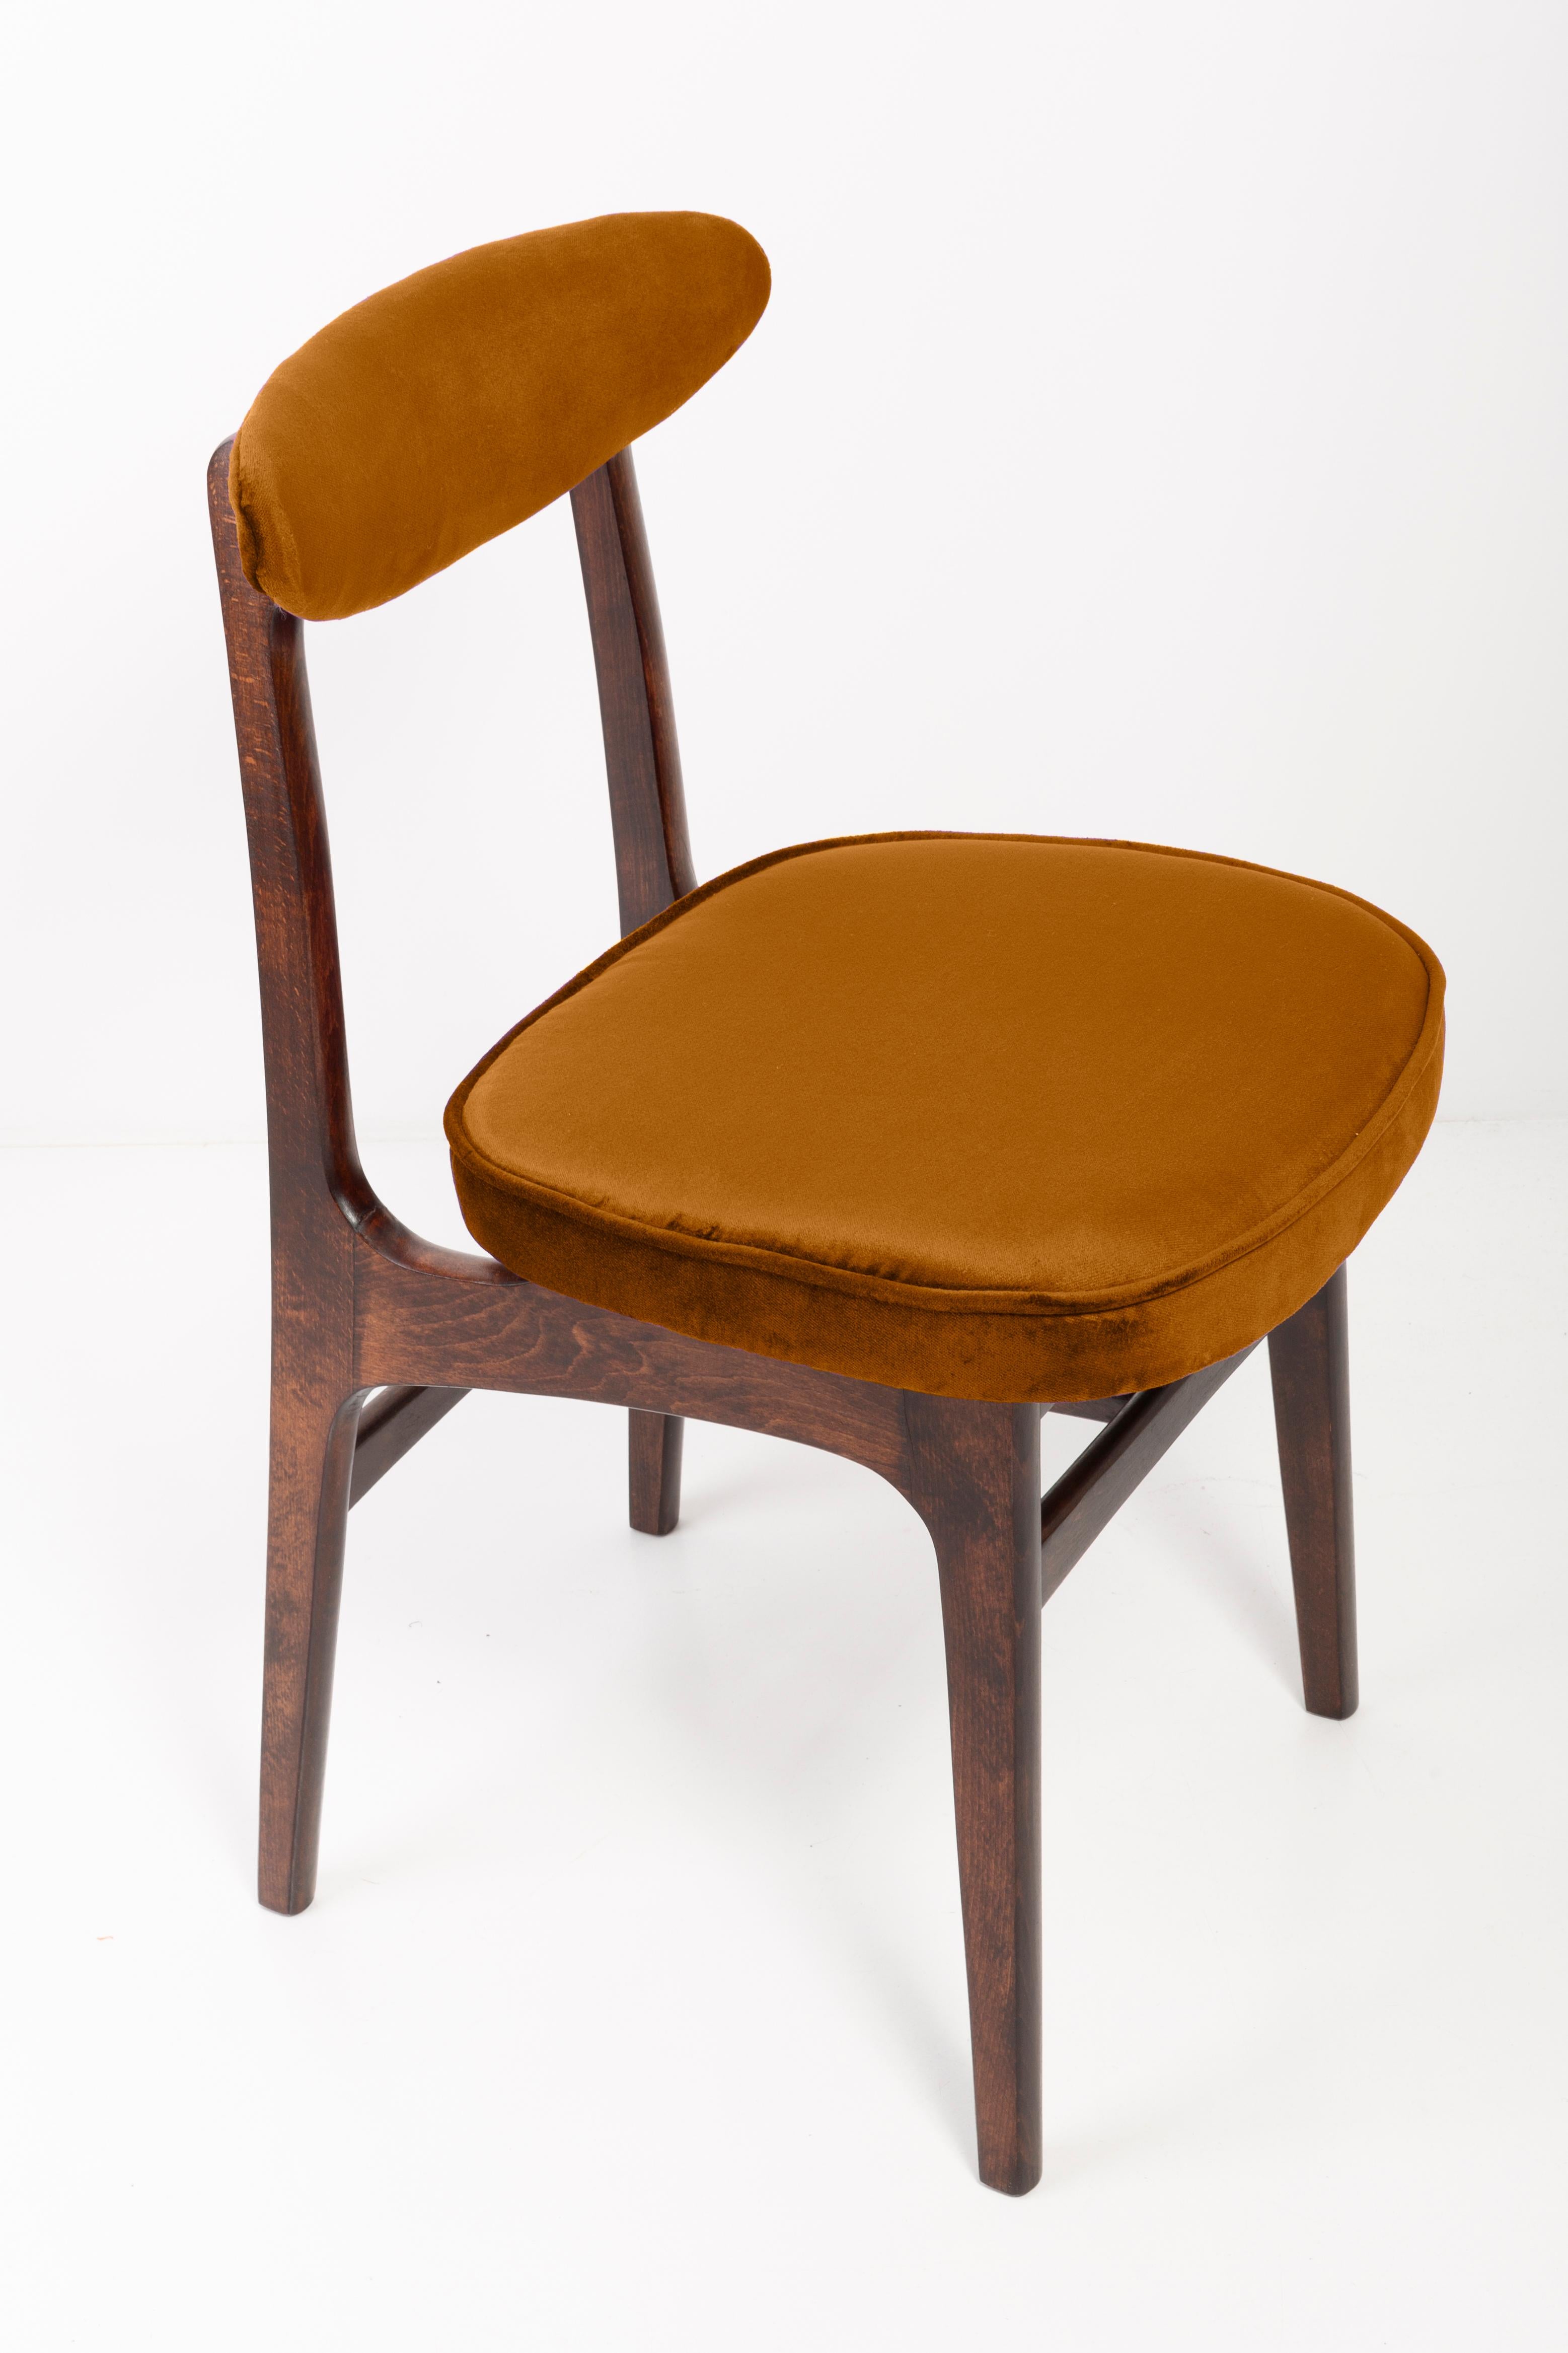 Douze chaises conçues par le professeur Rajmund Halas. Il a été fabriqué en bois de hêtre. Les chaises ont subi une rénovation complète de leur rembourrage et les boiseries ont été rafraîchies. Les sièges et les dossiers ont été habillés d'un tissu